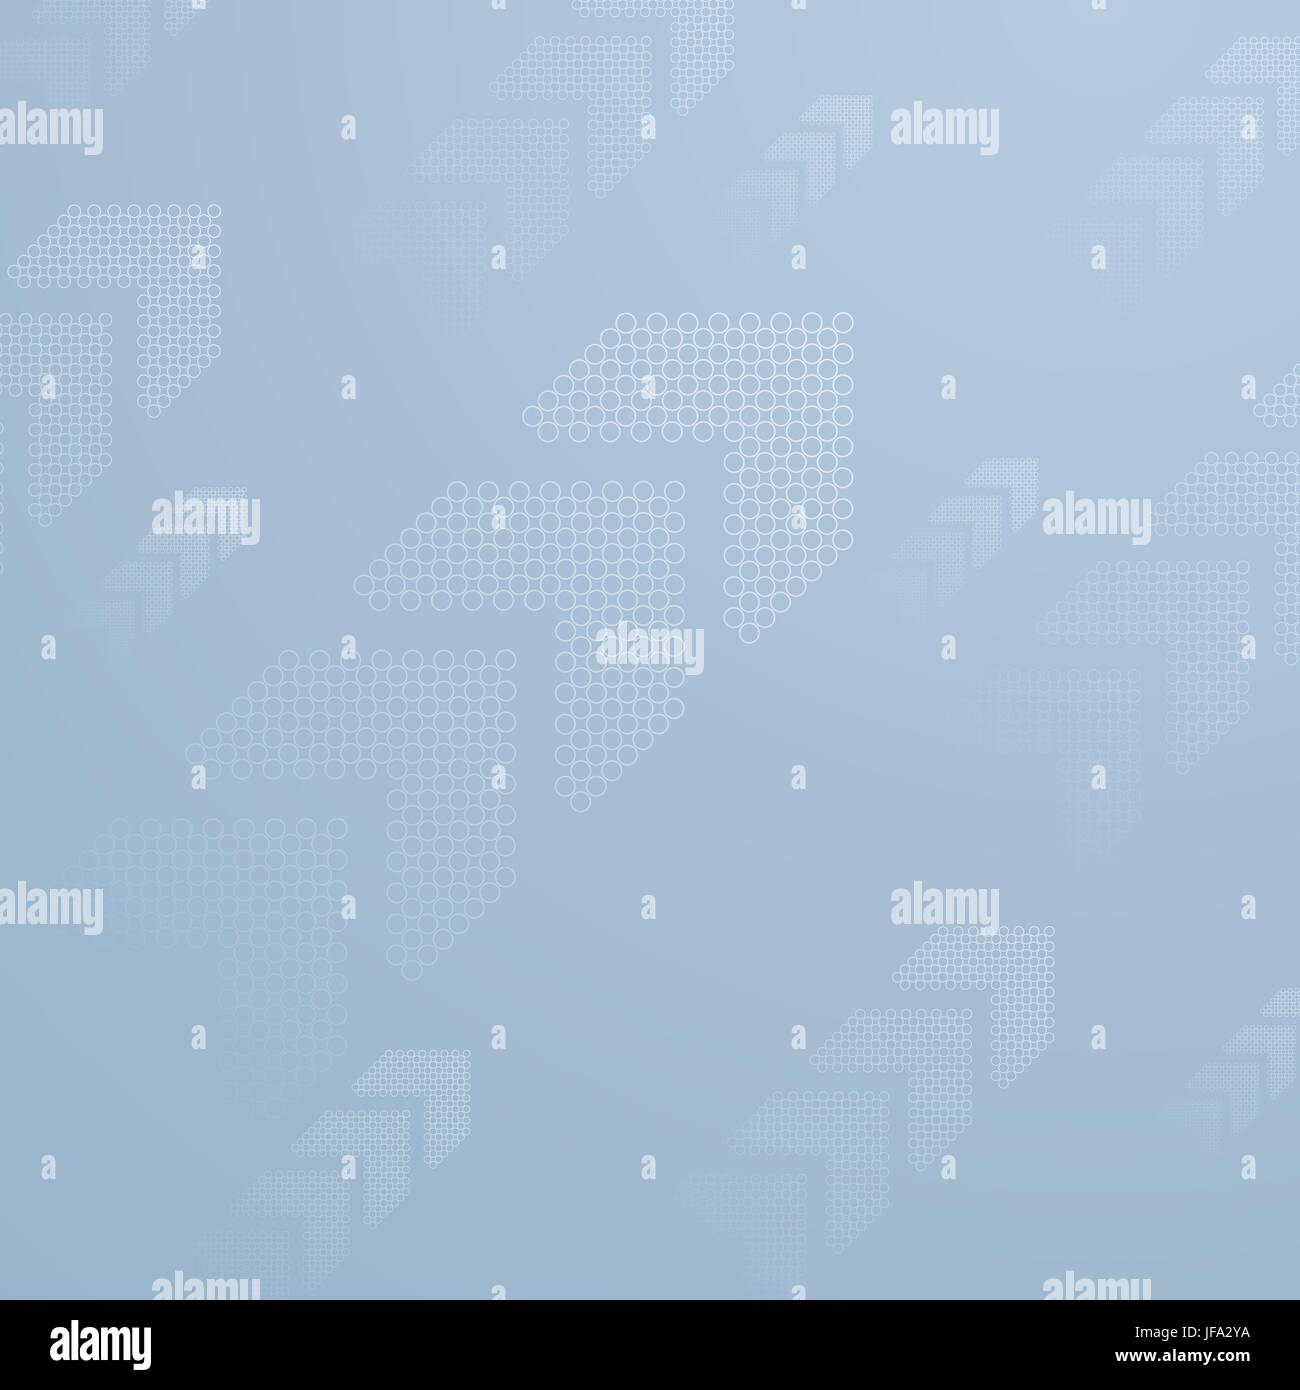 Blue tech business background avec des flèches Banque D'Images